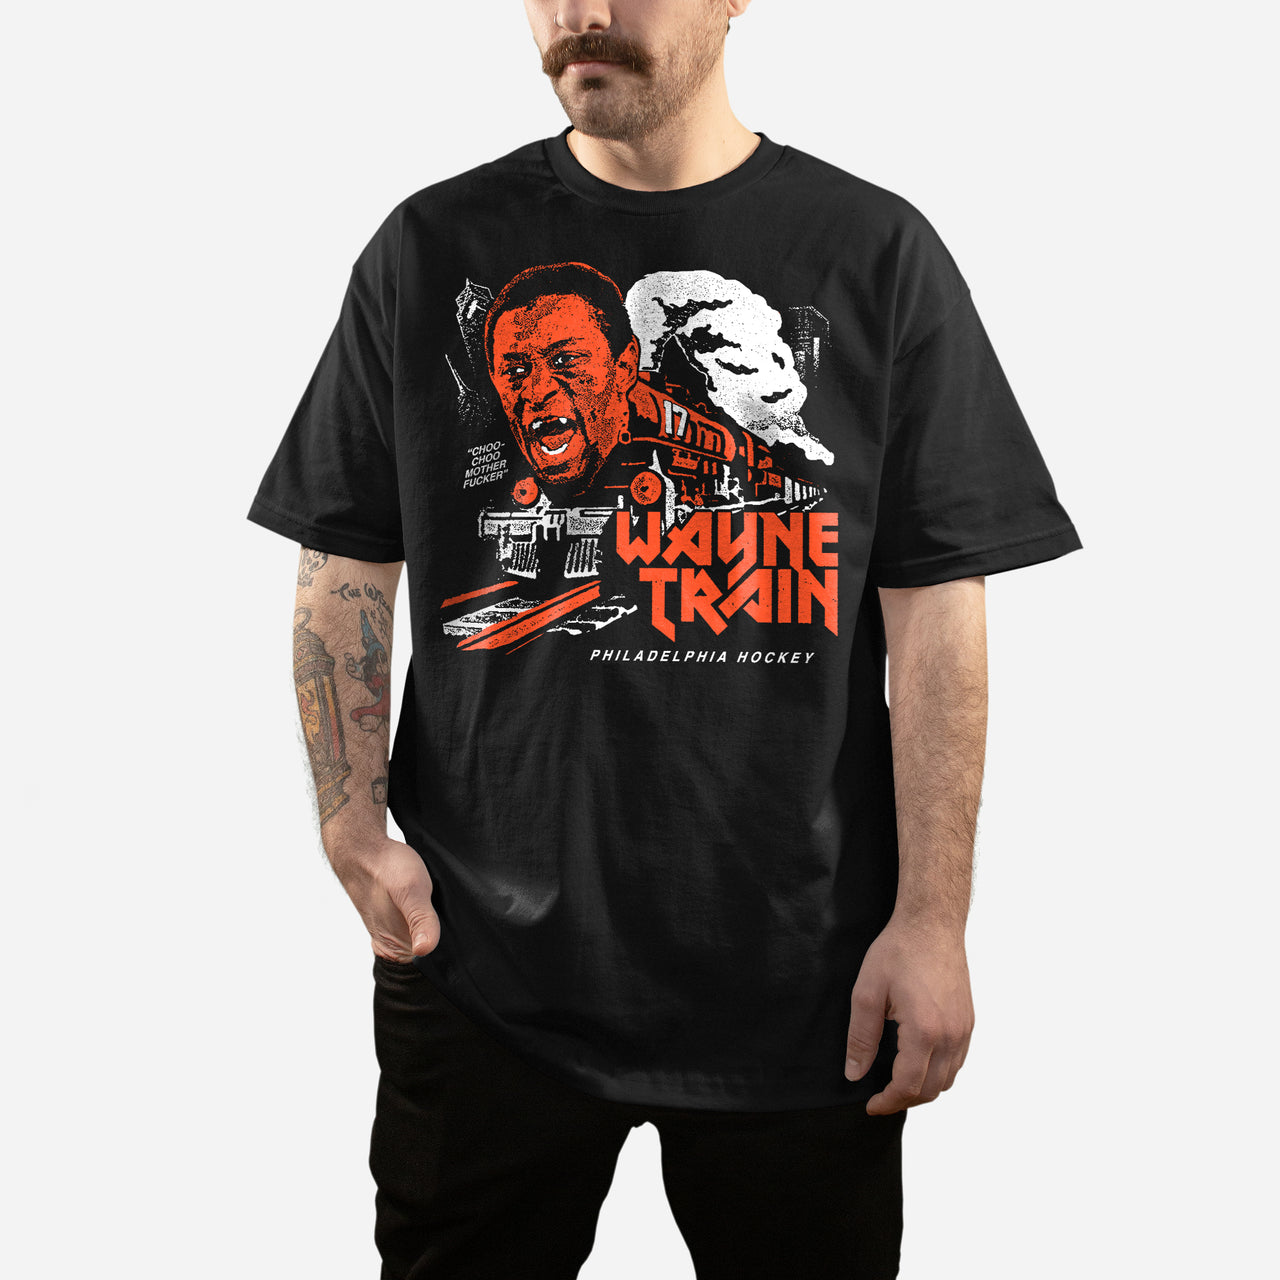 "Wayne Train" Shirt